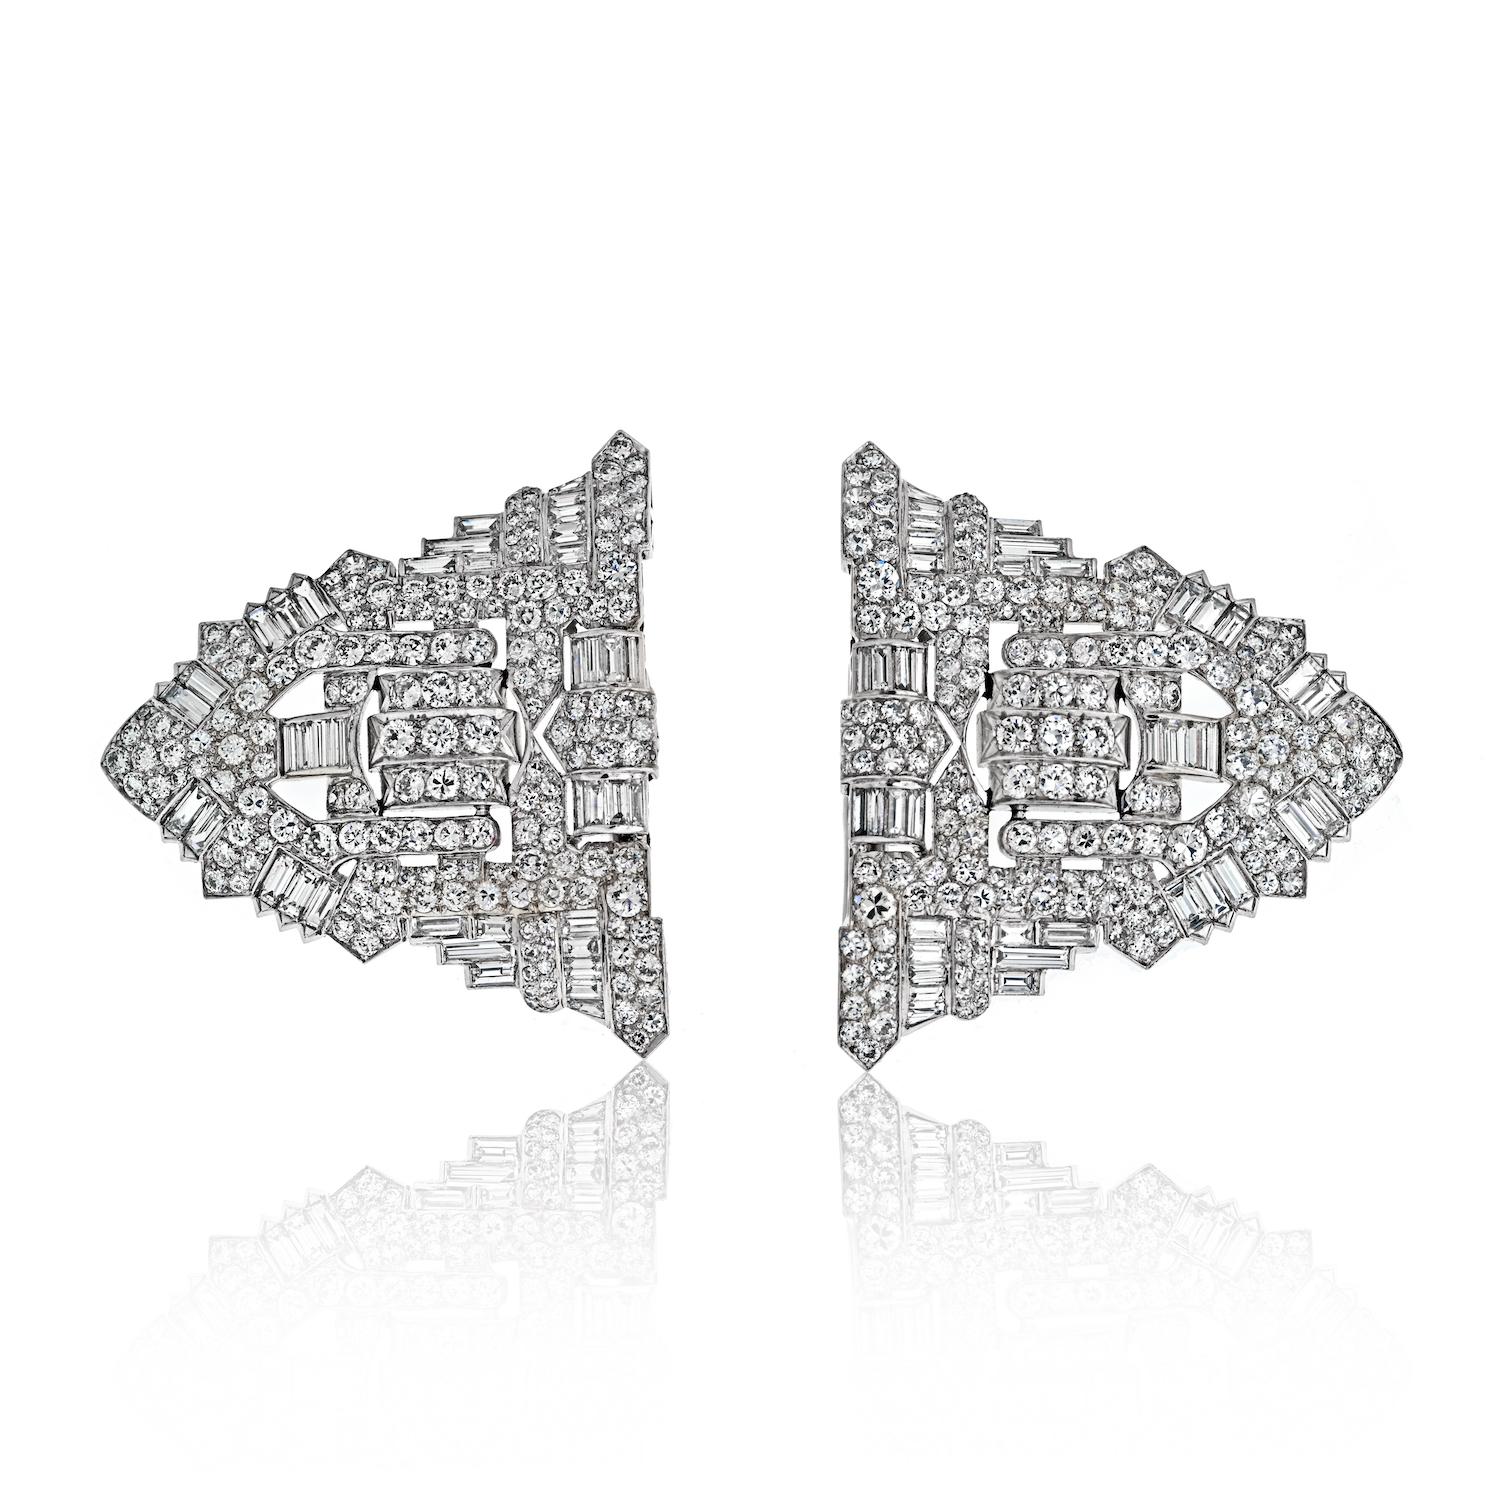 Ein wahres Meisterwerk des Art Déco - eine prächtige Platin-Diamant-Doppelclip-Brosche, ein zeitloser Schatz von geometrischer Eleganz und üppigem Glanz.

Jeder der doppelten Clips in Form eines Schildes ist ein Zeugnis für die exquisite